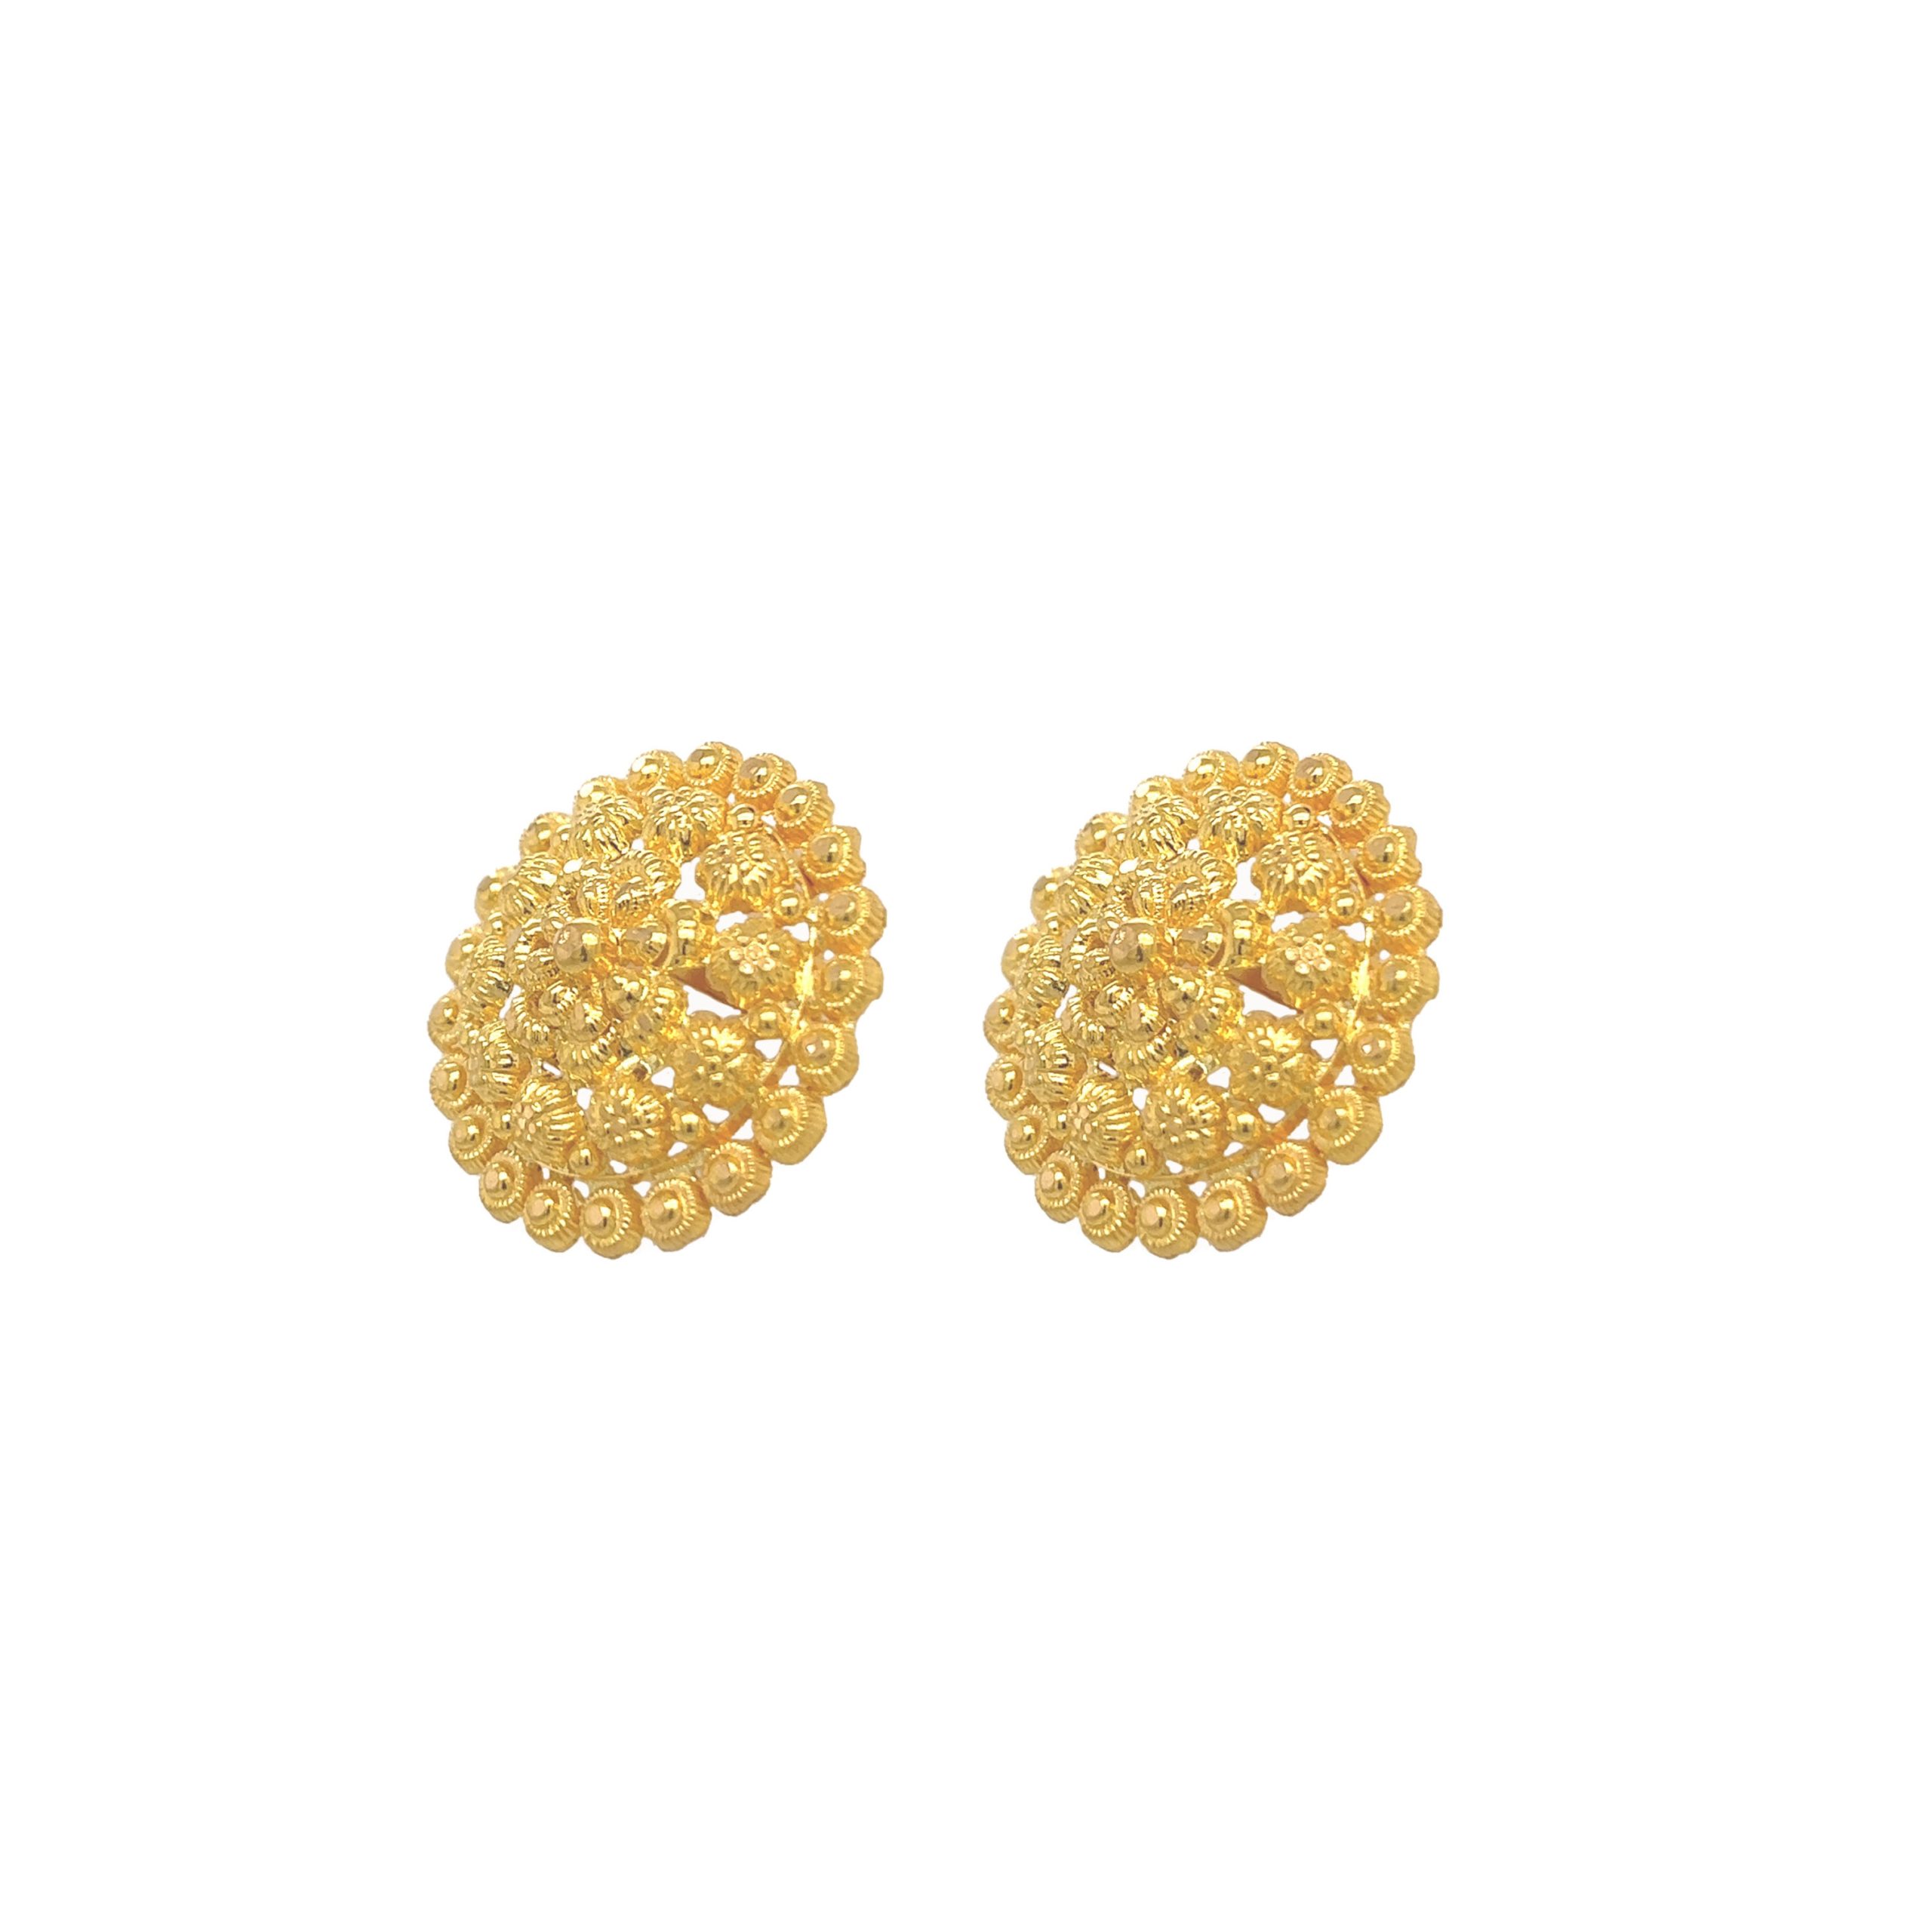 Roop Darshan - 🥰Beautiful 22ct Gold Stud Earrings 🥰 Secure... | Facebook